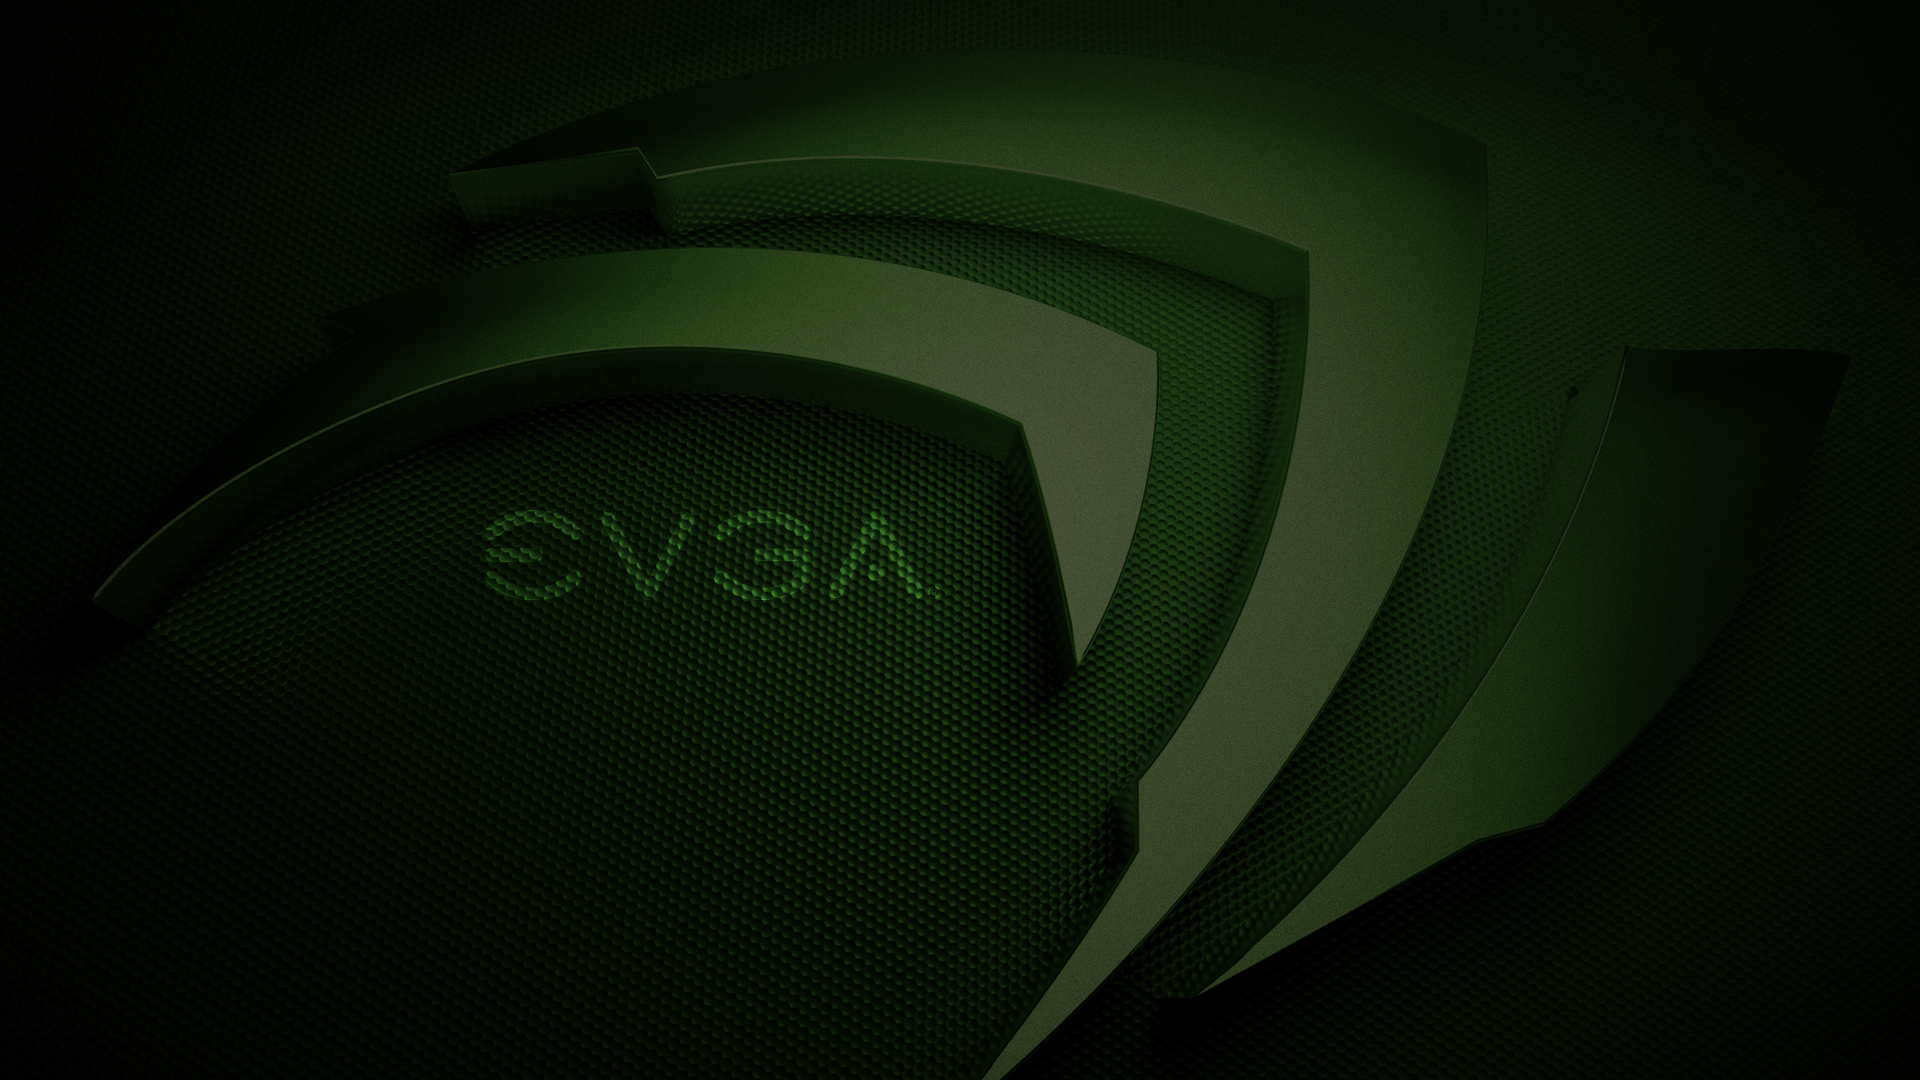 HD Evga Nvidia Green 1920x Wallpaper